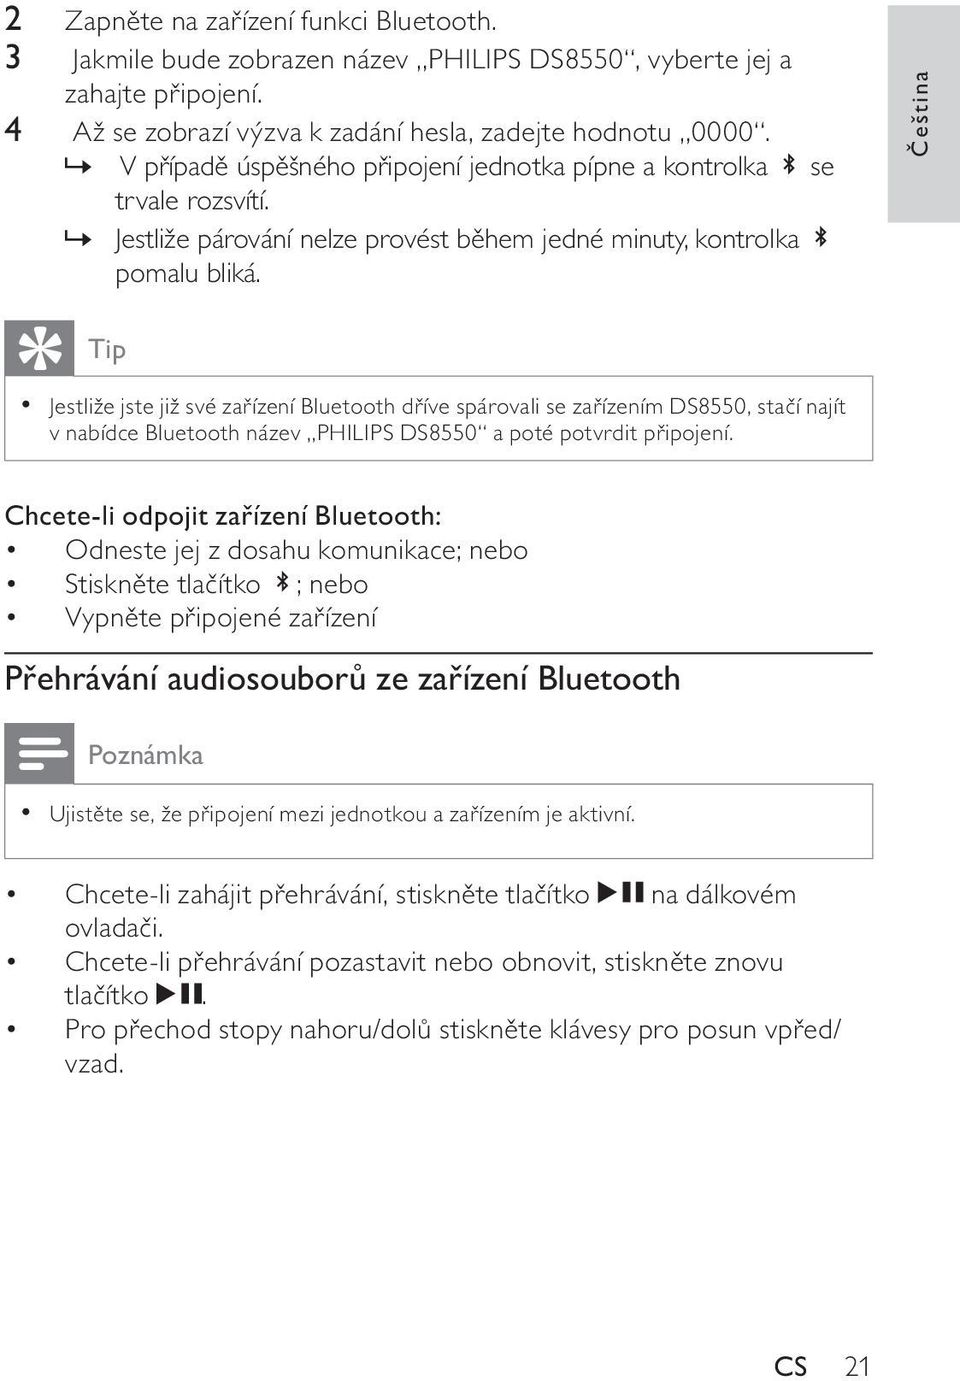 Čeština Tip Jestliže jste již své zařízení Bluetooth dříve spárovali se zařízením DS8550, stačí najít v nabídce Bluetooth název PHILIPS DS8550 a poté potvrdit připojení.